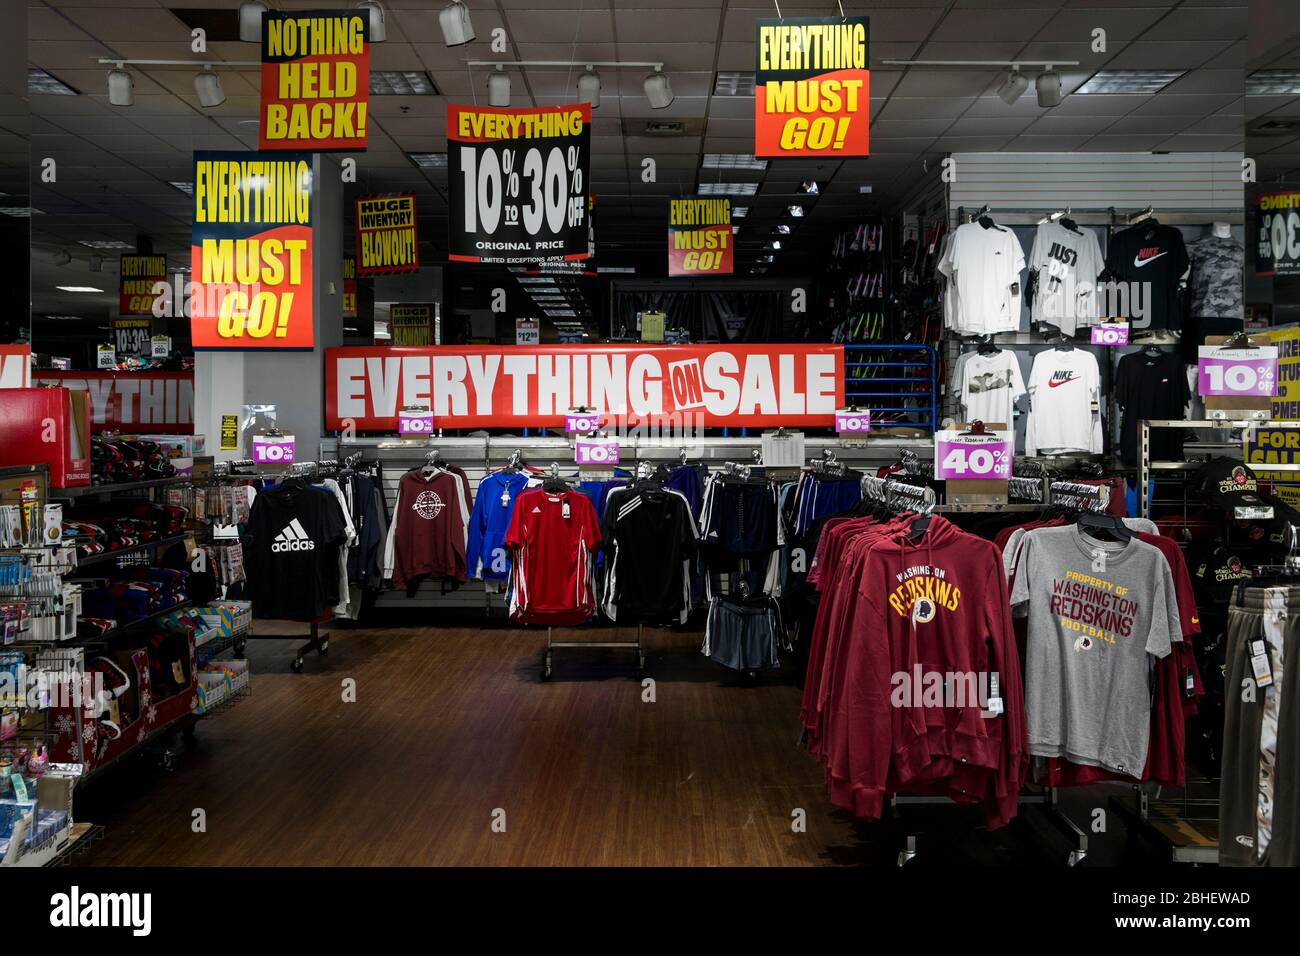 La segnaletica "Everything Must Go" all'interno di un negozio di articoli sportivi Modell in fase di liquidazione a Bethesda, Maryland, il 22 aprile 2020. Foto Stock